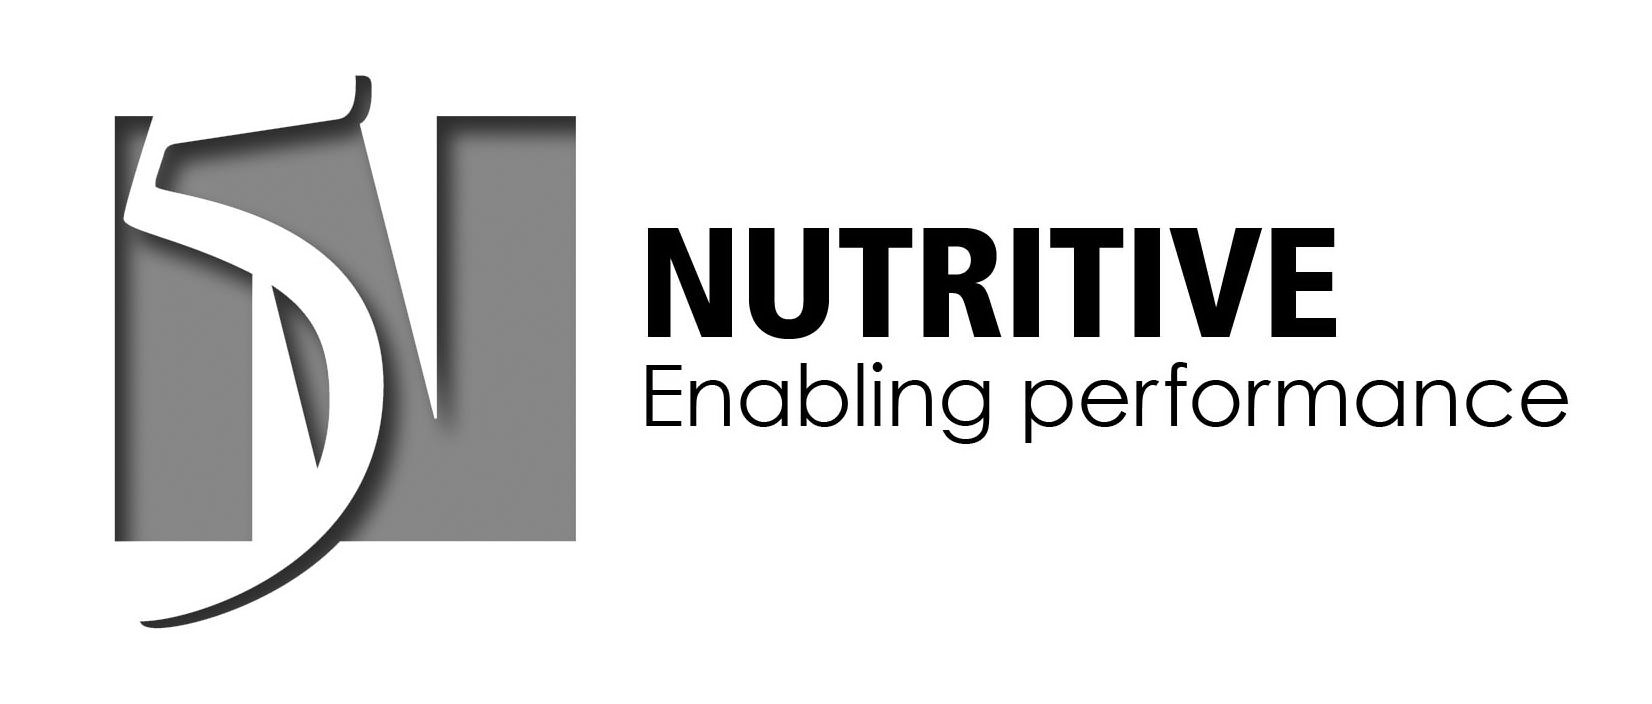  5N NUTRITIVE ENABLING PERFORMANCE